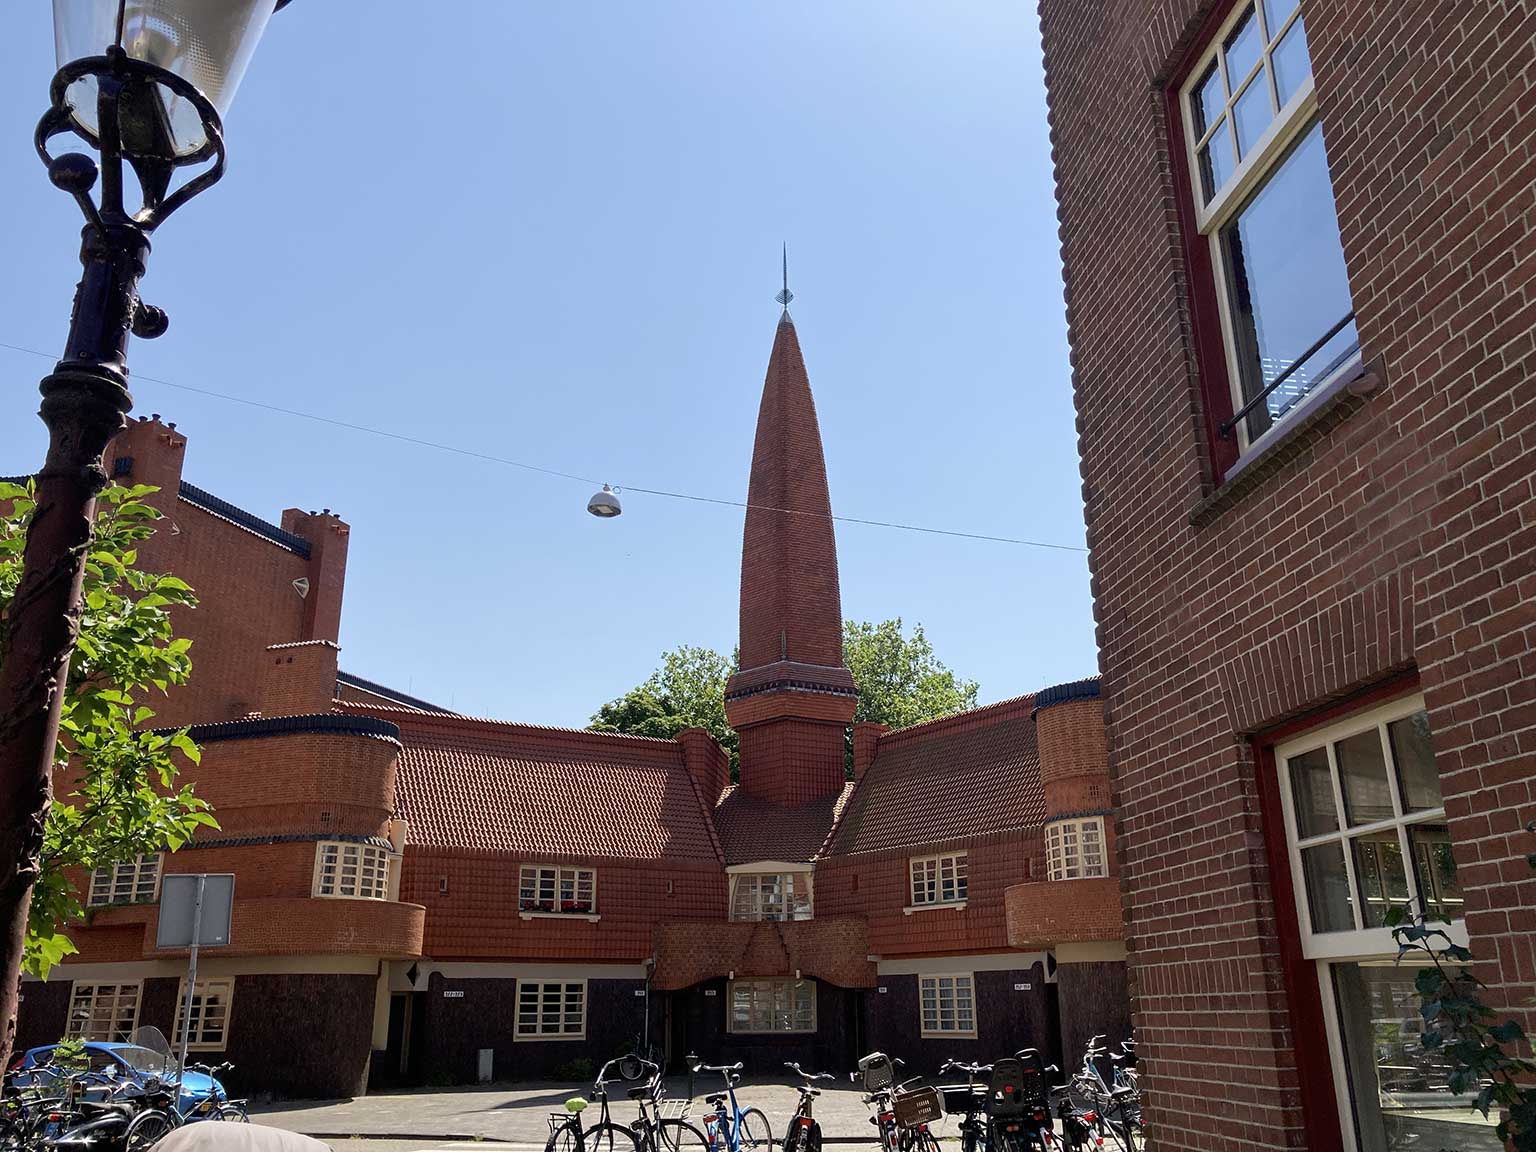 Housing block Het Schip, Amsterdam, view from across the Hembrugstraat